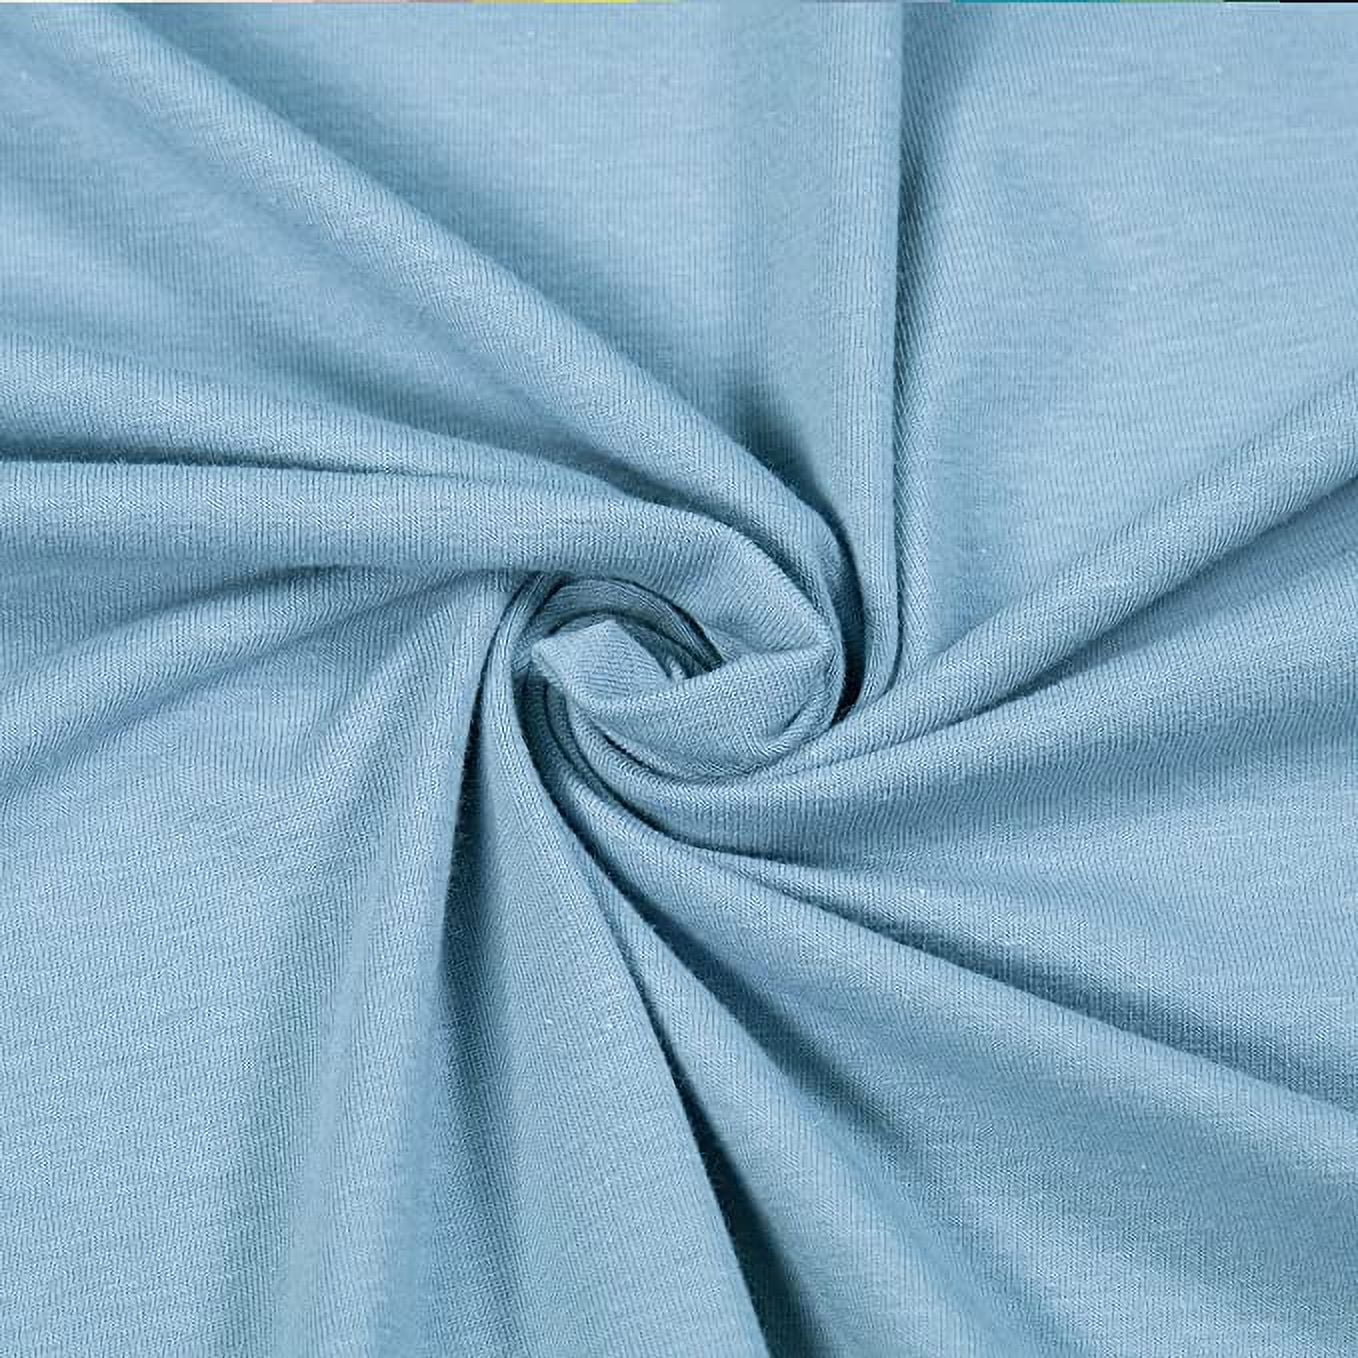 Microfiber Stretch Jersey Fabric Capri Blue 25 yard bolt